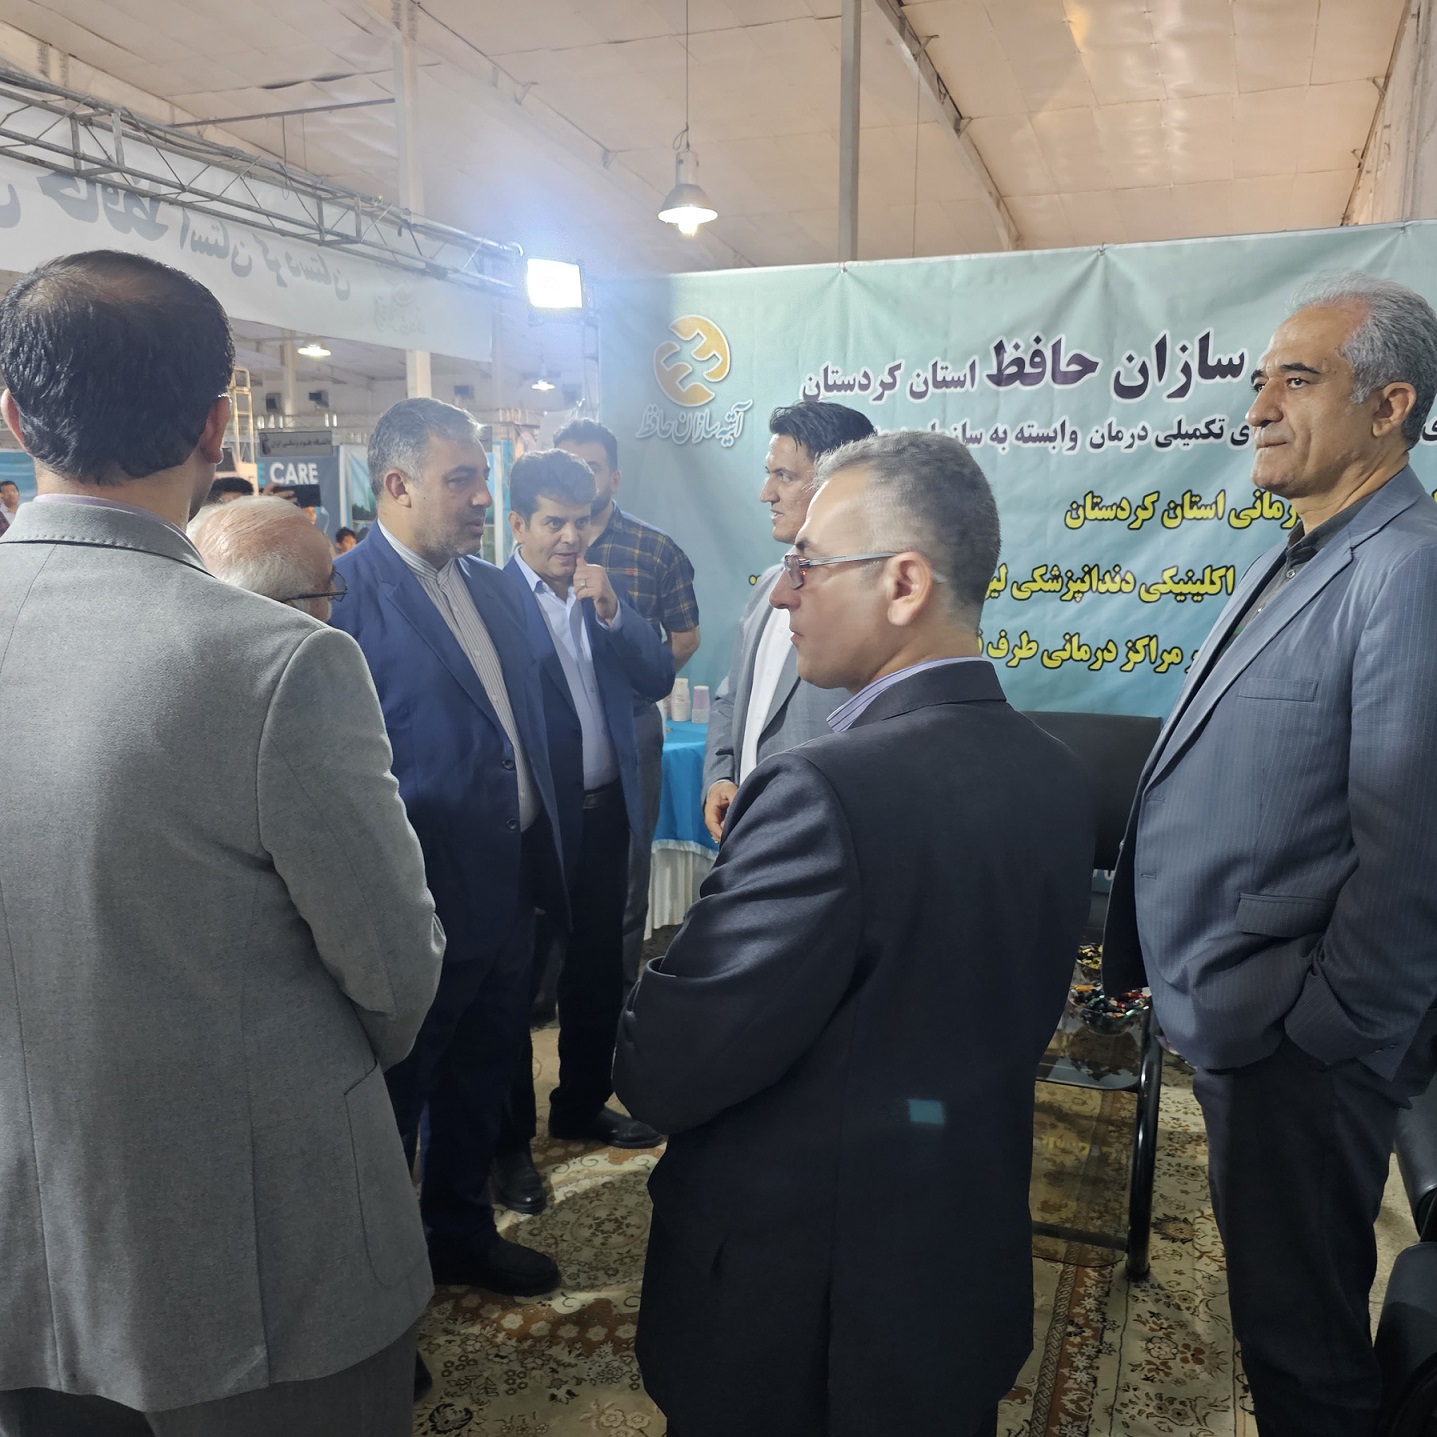 حضور شرکت آتیه سازان حافظ در نمایشگاه بین المللی توریسم درمانی استان کردستان  